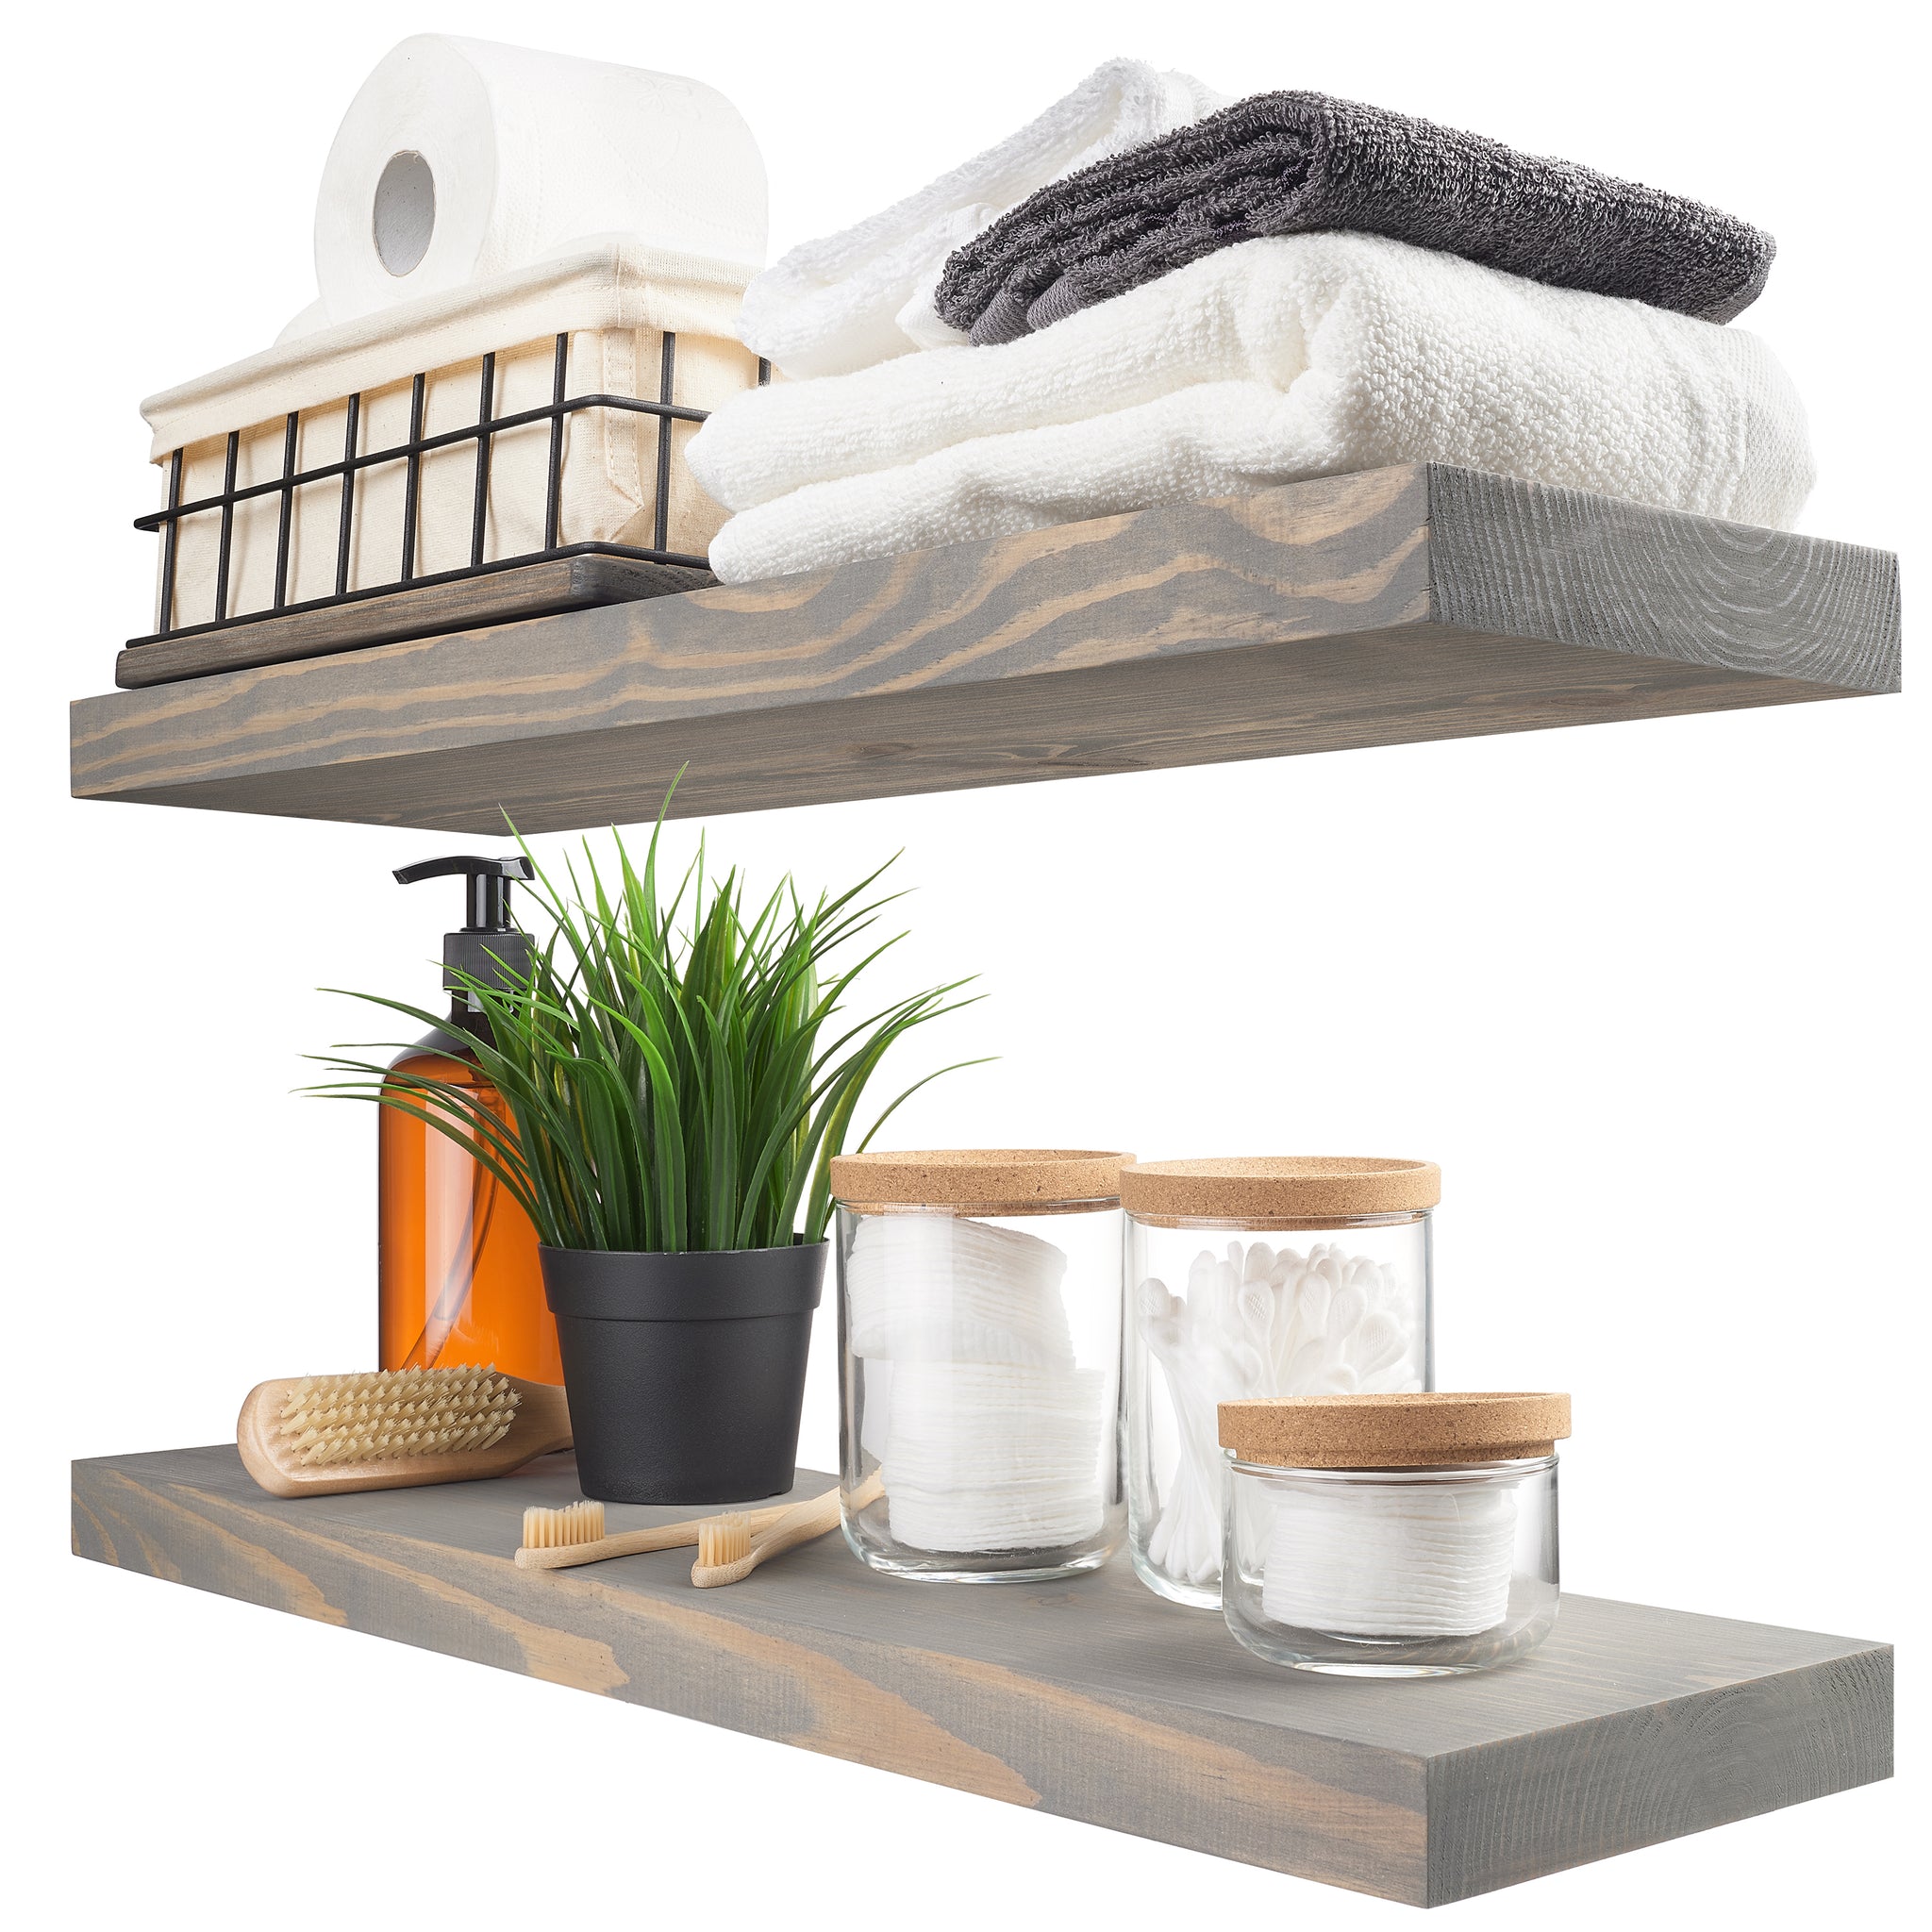 Wood Floating Shelves Set of 2 - Grey Color - 24D x 6.7W